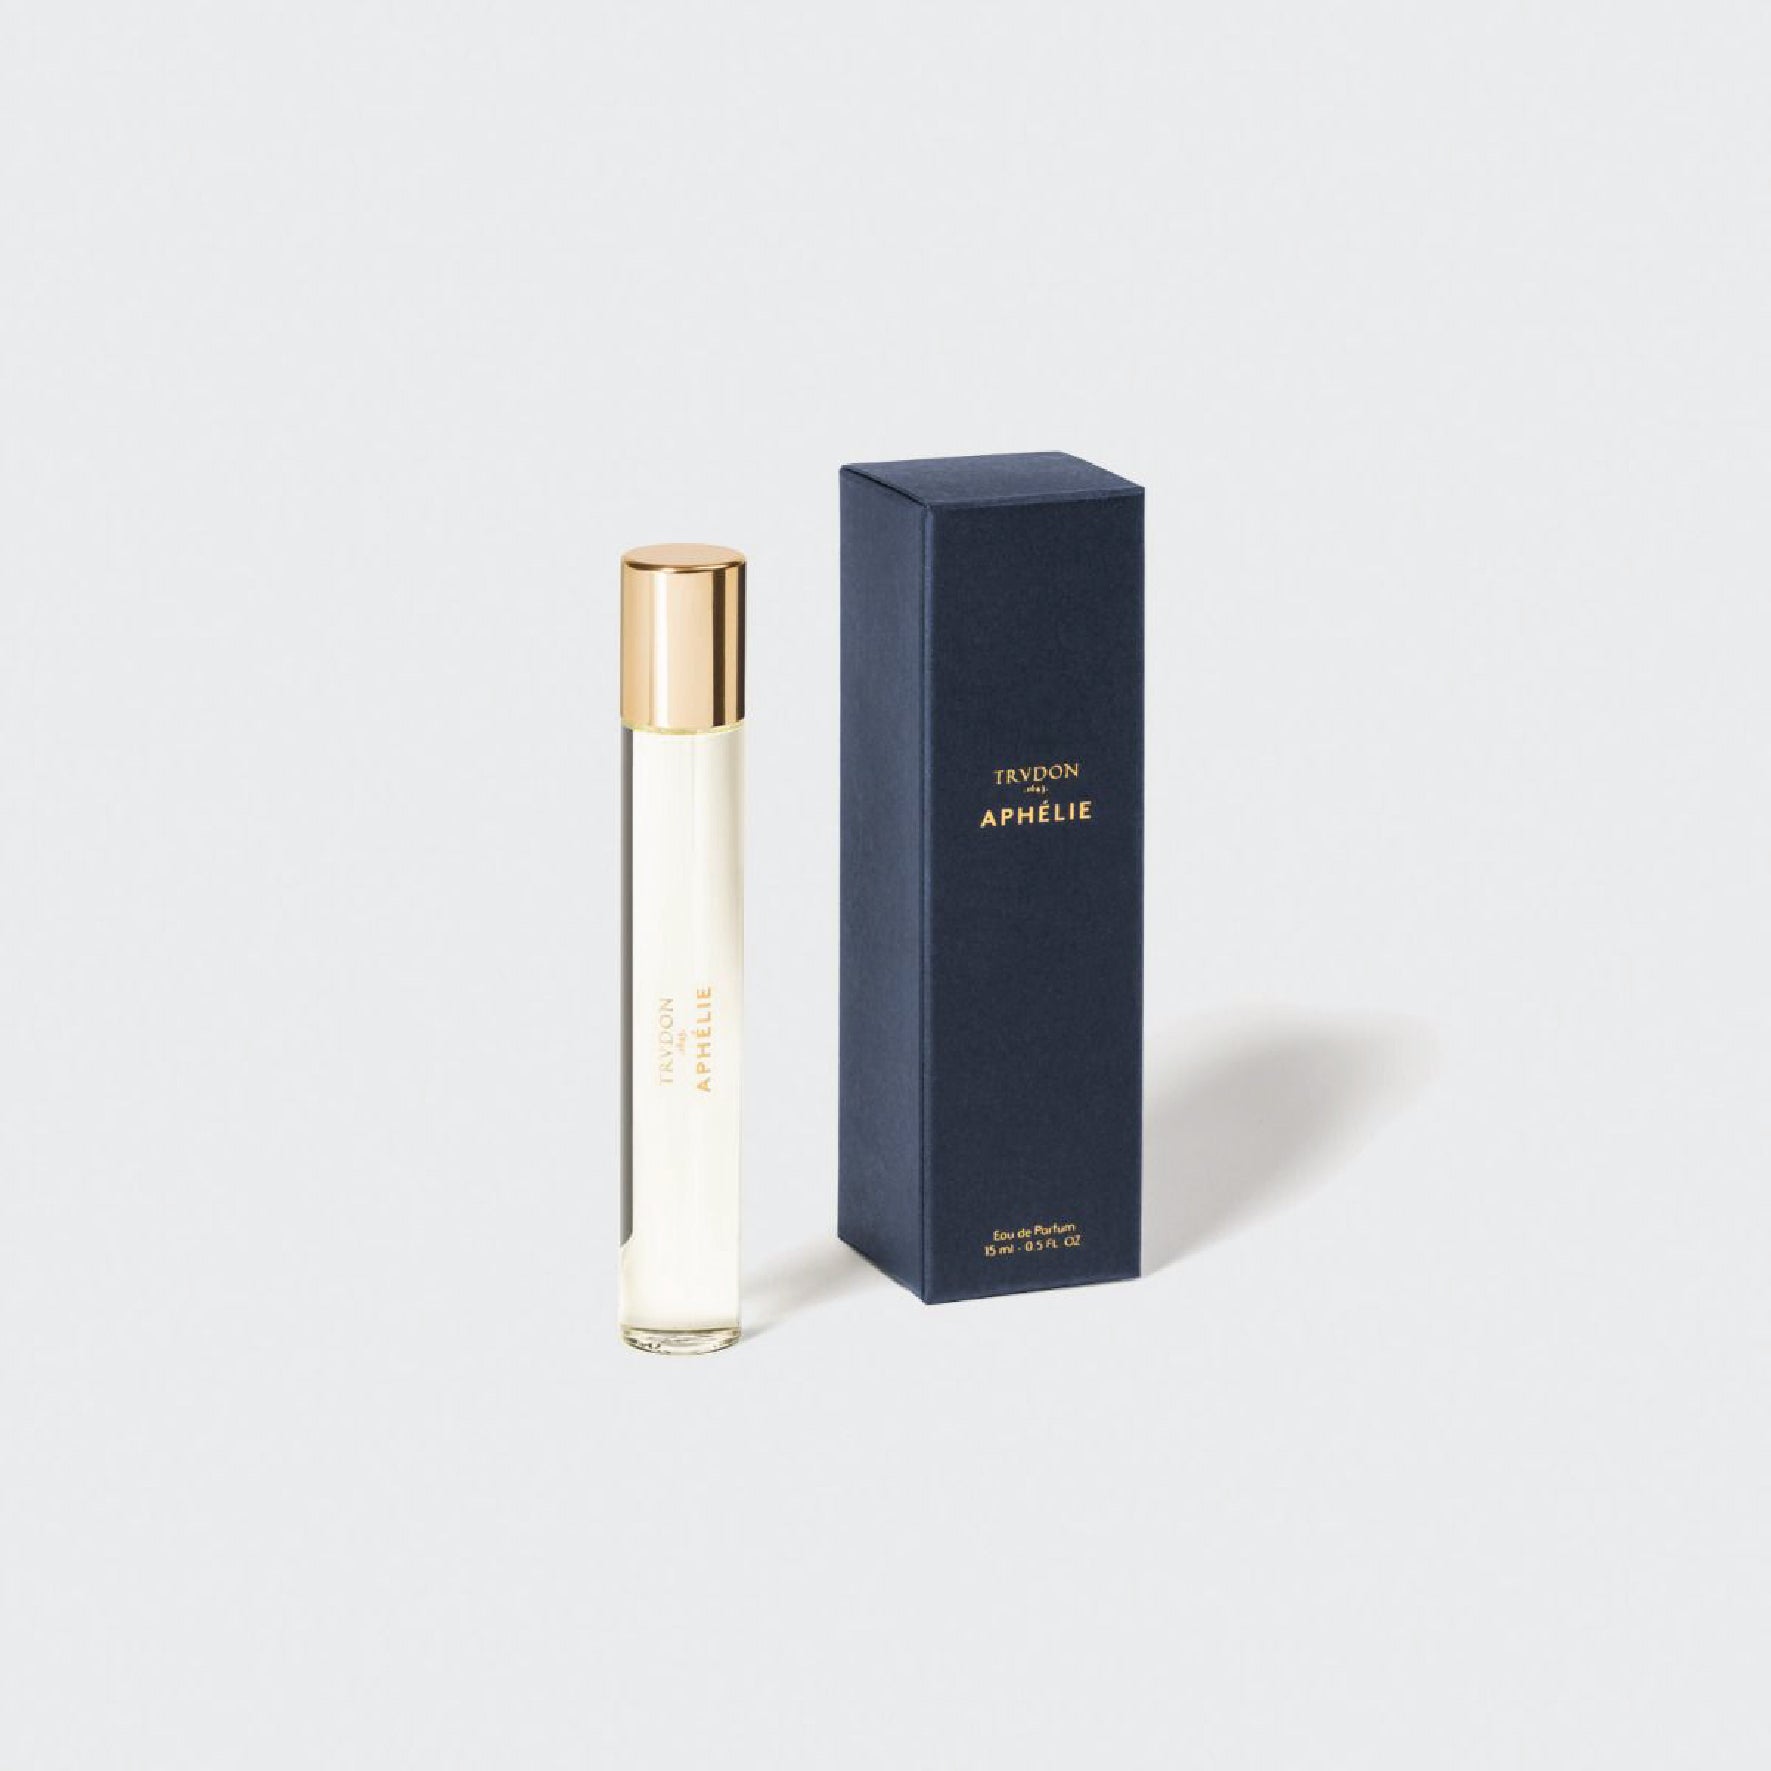 APHELIE Perfume 15ml 香水 Trudon